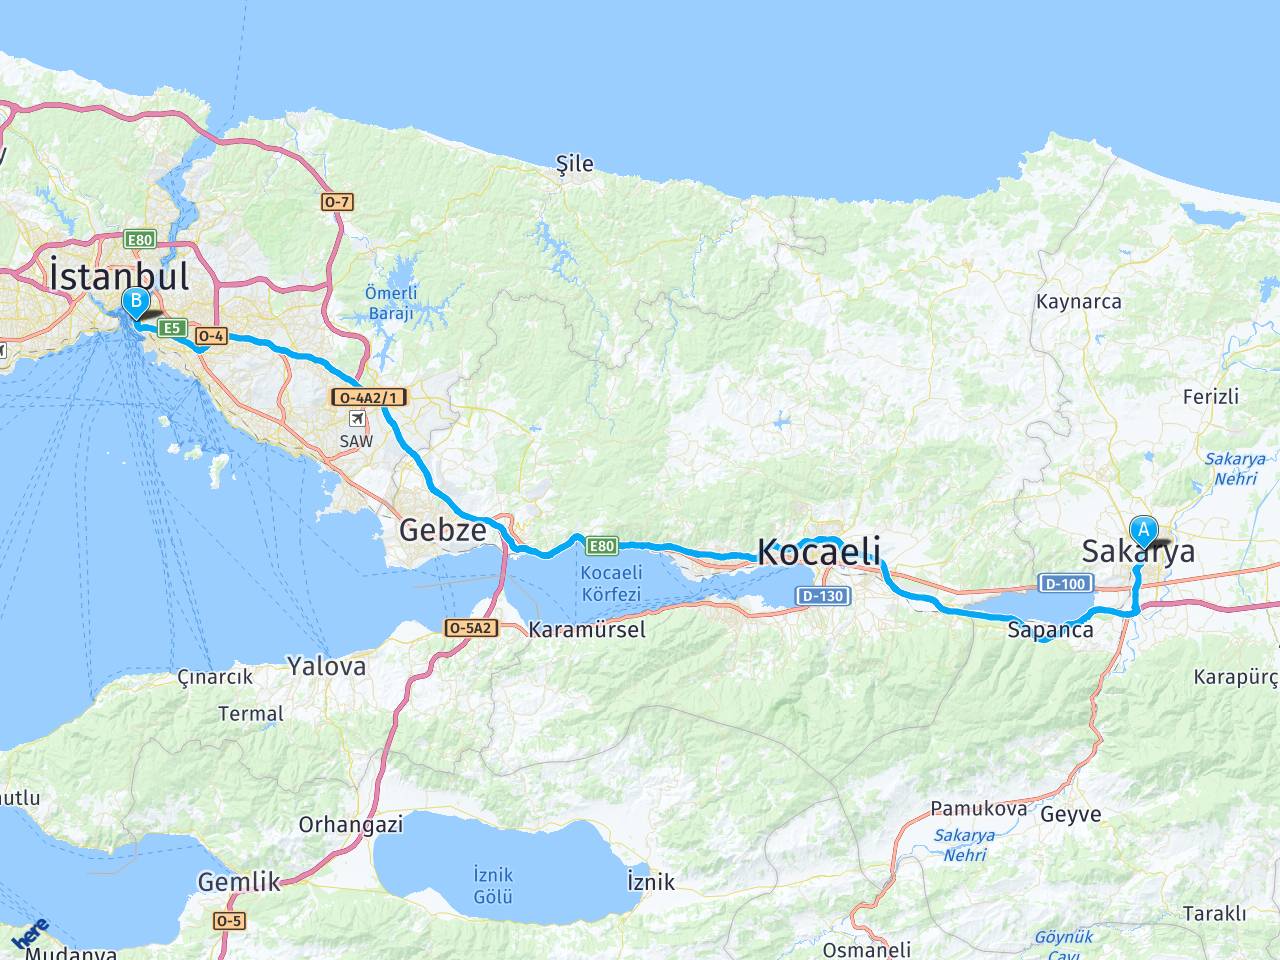 sakarya istanbul harem otogar arasi mesafe sakarya istanbul harem otogar yol haritasi sakarya istanbul harem otogar kac saat kac km